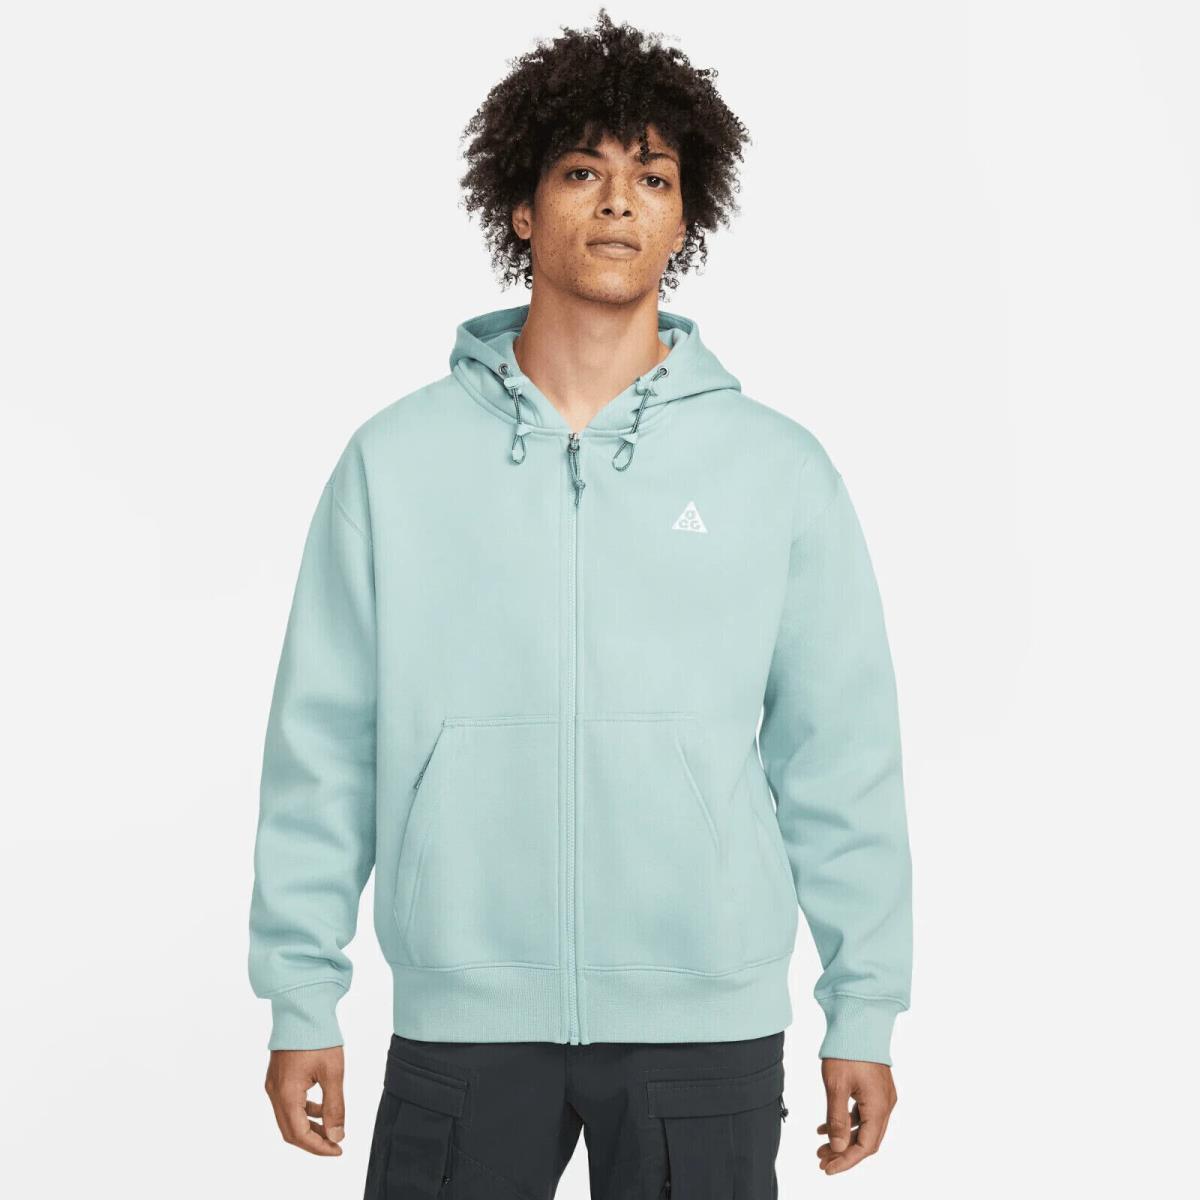 Nike Acg Thermafit Full Zip Hoodie Size XL Ocean Blue Sweatshirt DH3089 366